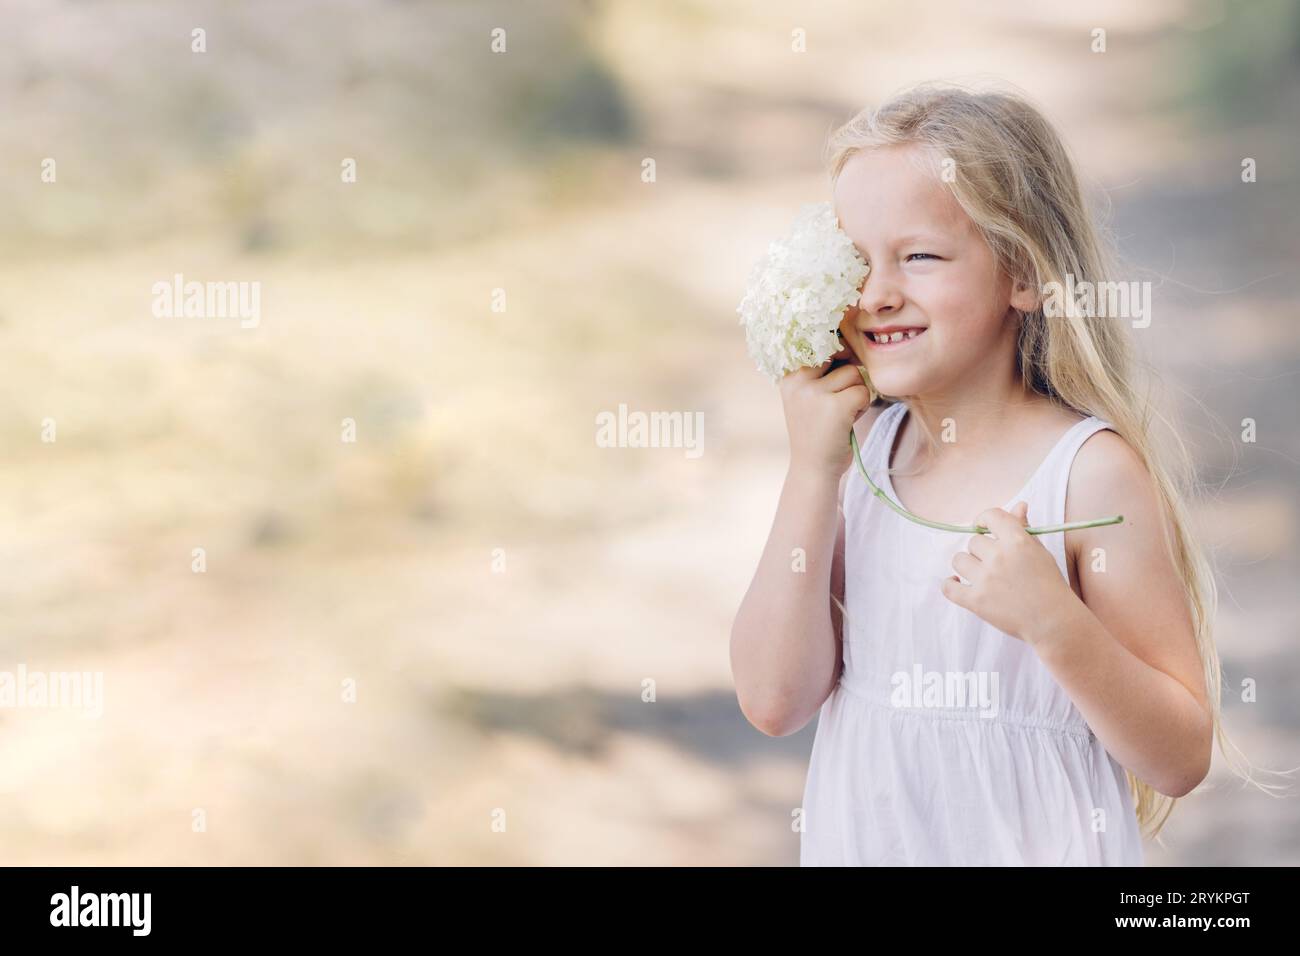 Porträt eines jungen schönen Mädchens, das einen Teil ihres Gesichts hinter einer Hortensie versteckt und lächelt. Horizontaler Rahmen. Stockfoto